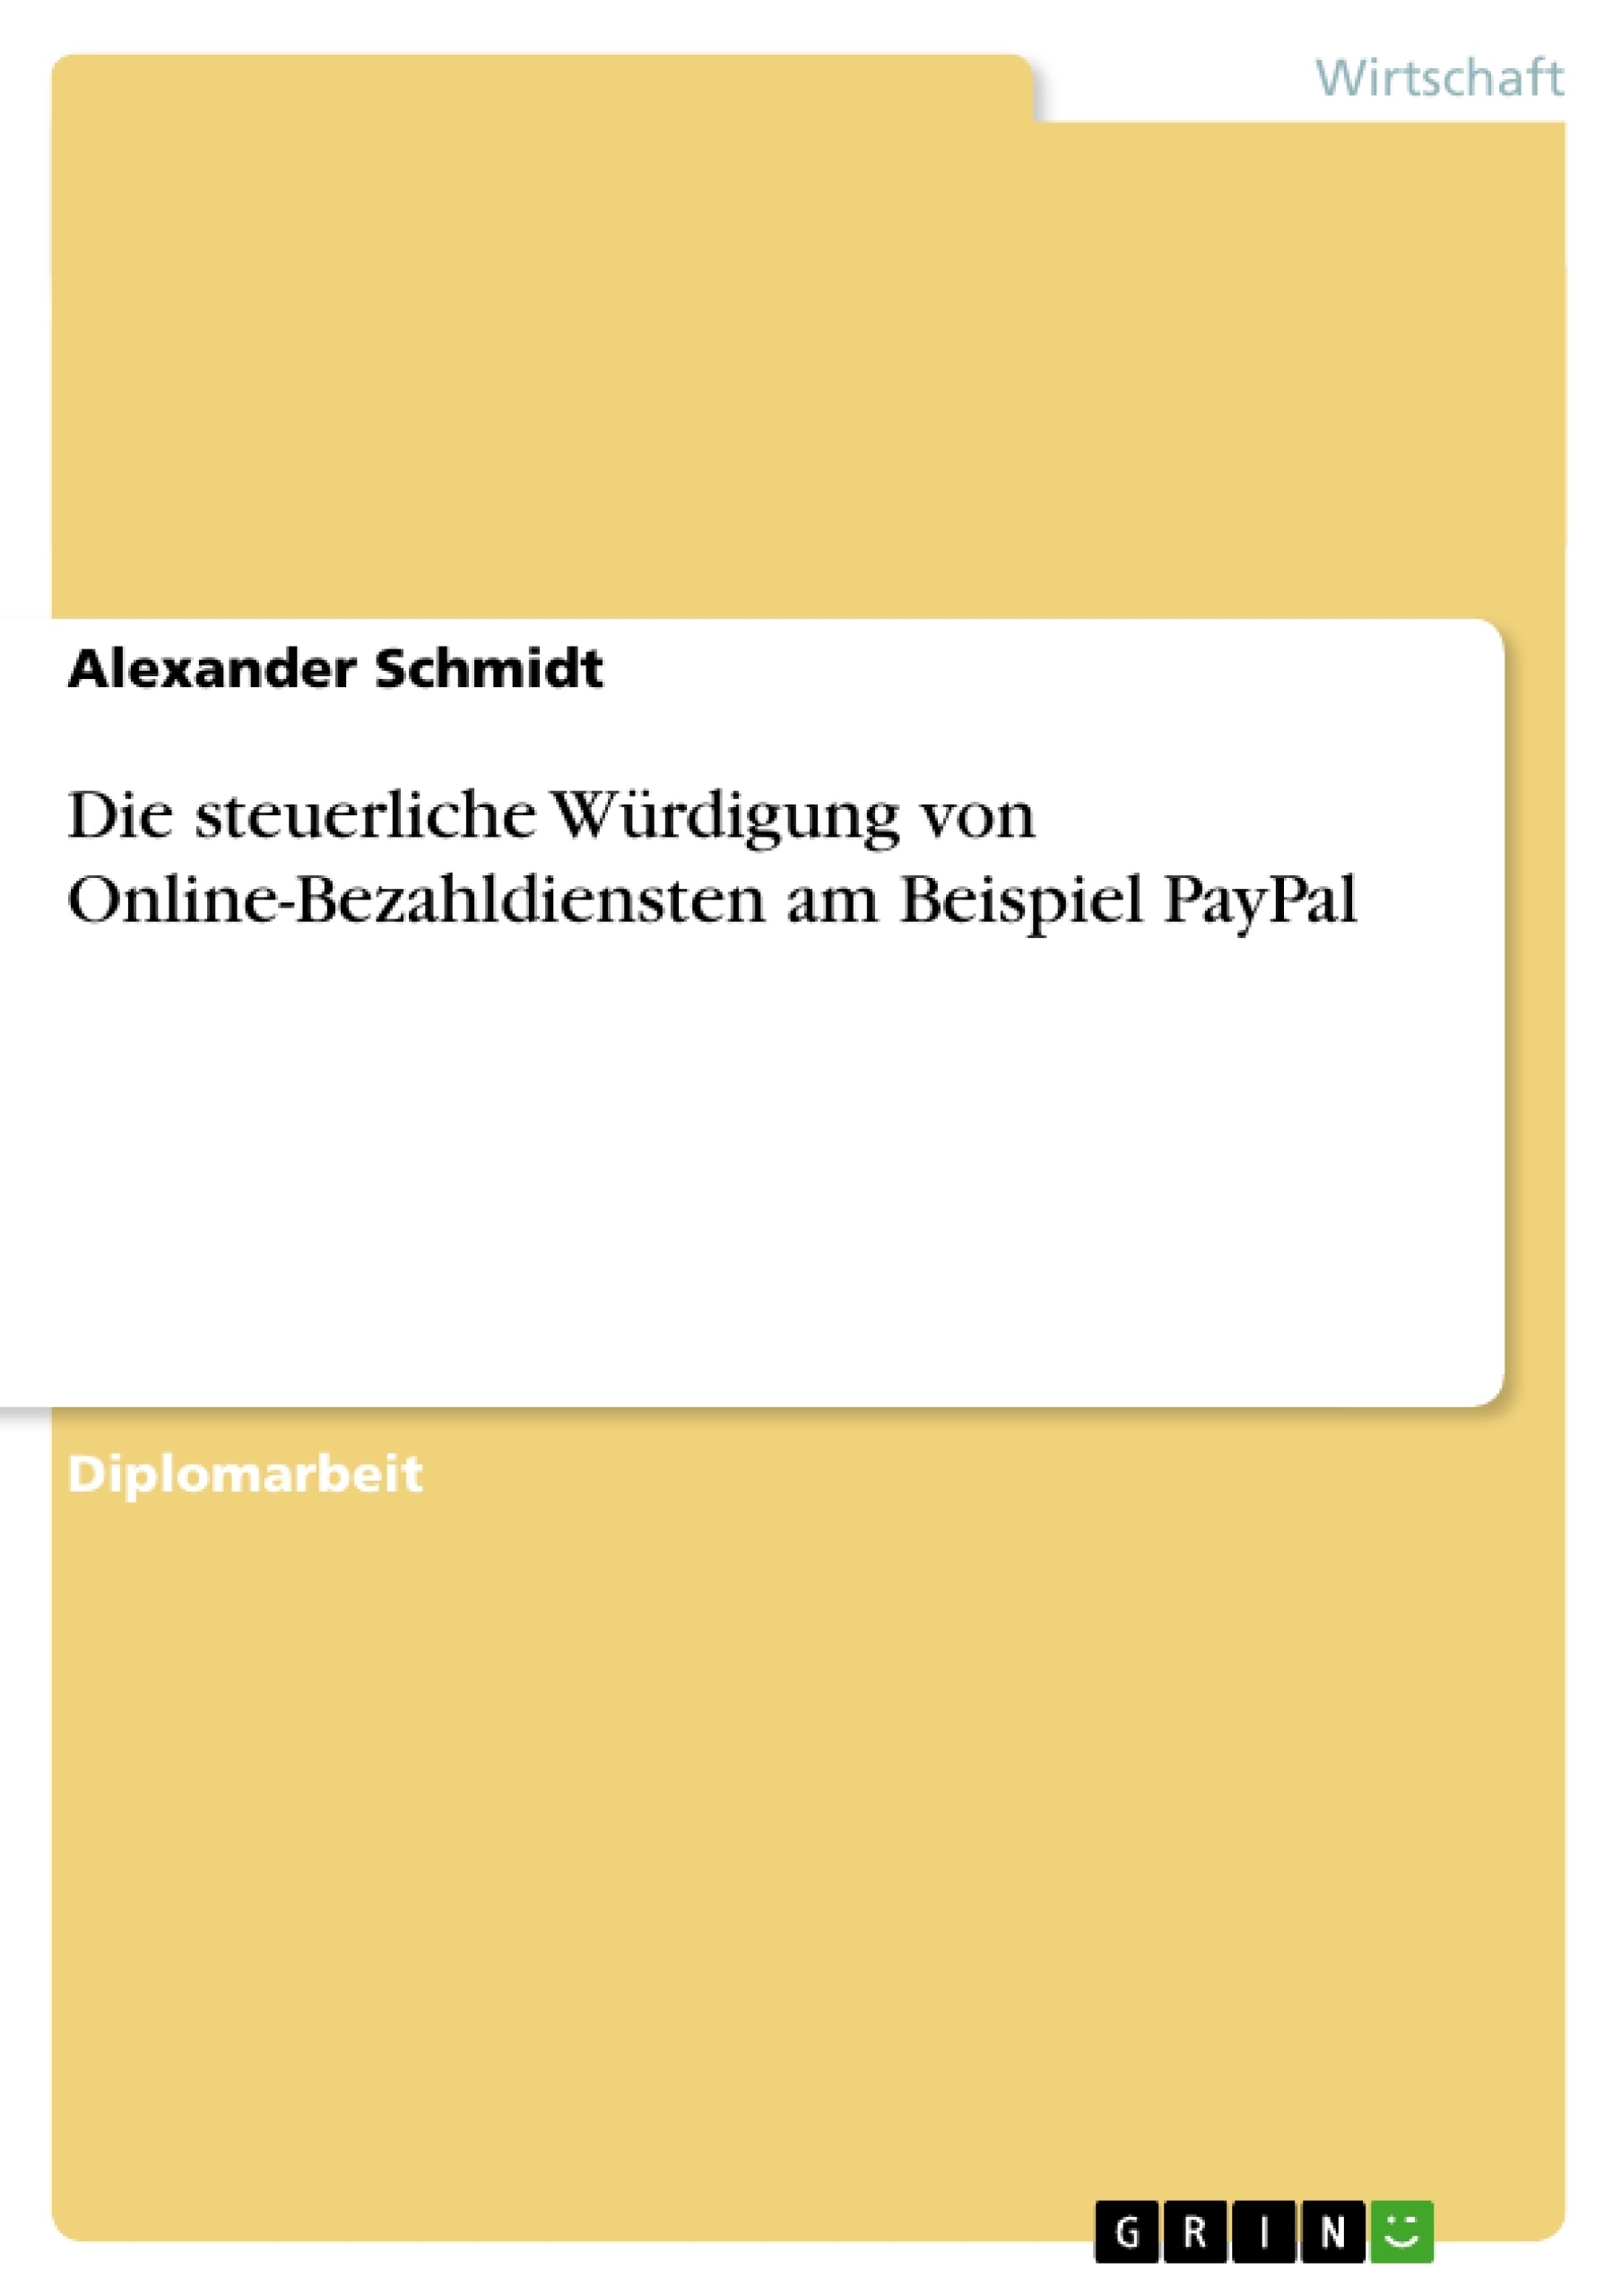 Título: Die steuerliche Würdigung von Online-Bezahldiensten am Beispiel PayPal